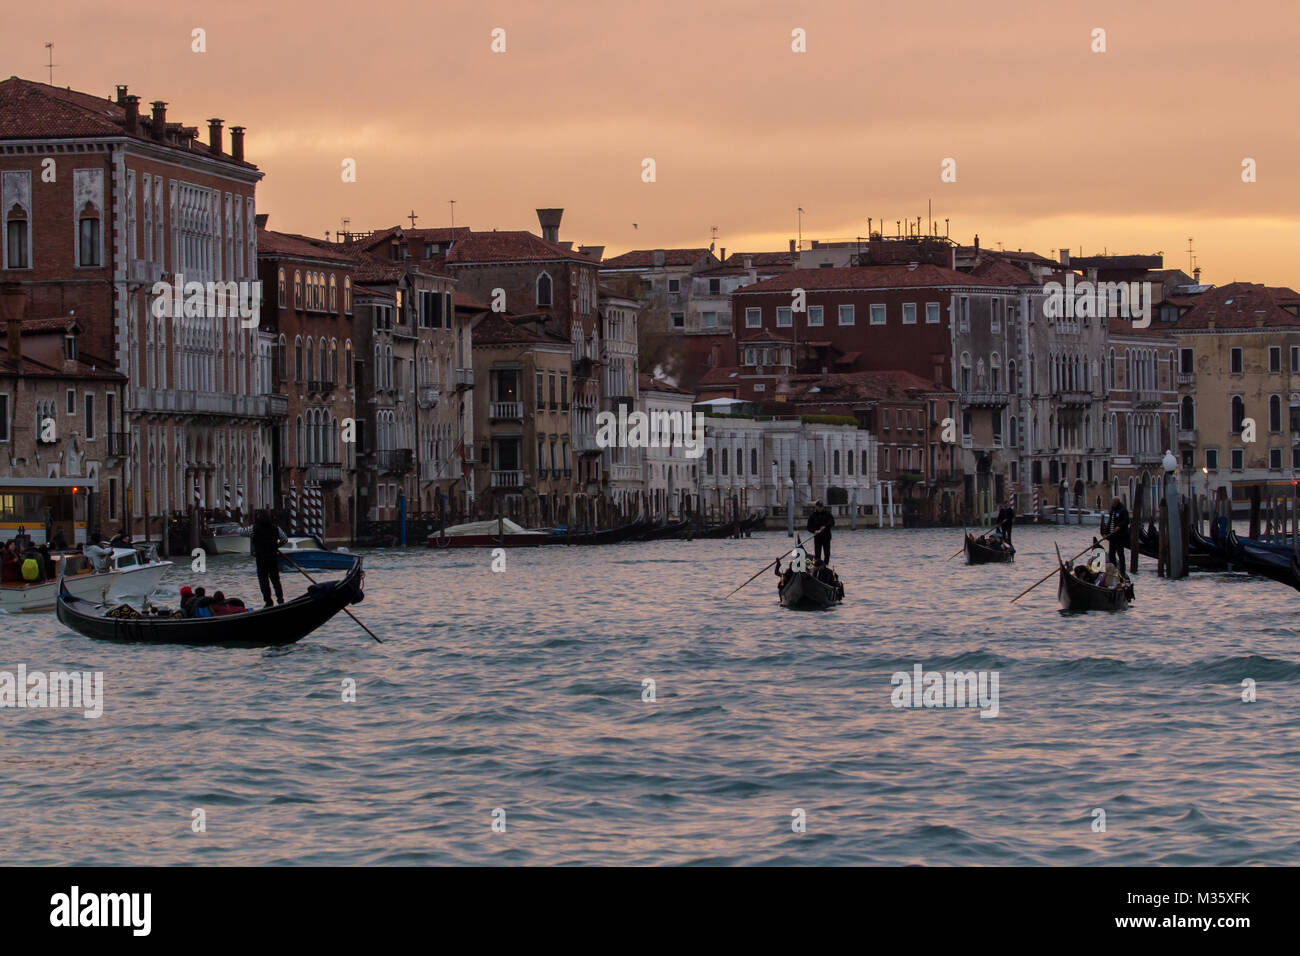 Venise Gondoles sur le Grand Canal au coucher du soleil et de l'eau bâtiments architecture vénitienne Italie Voyage Banque D'Images